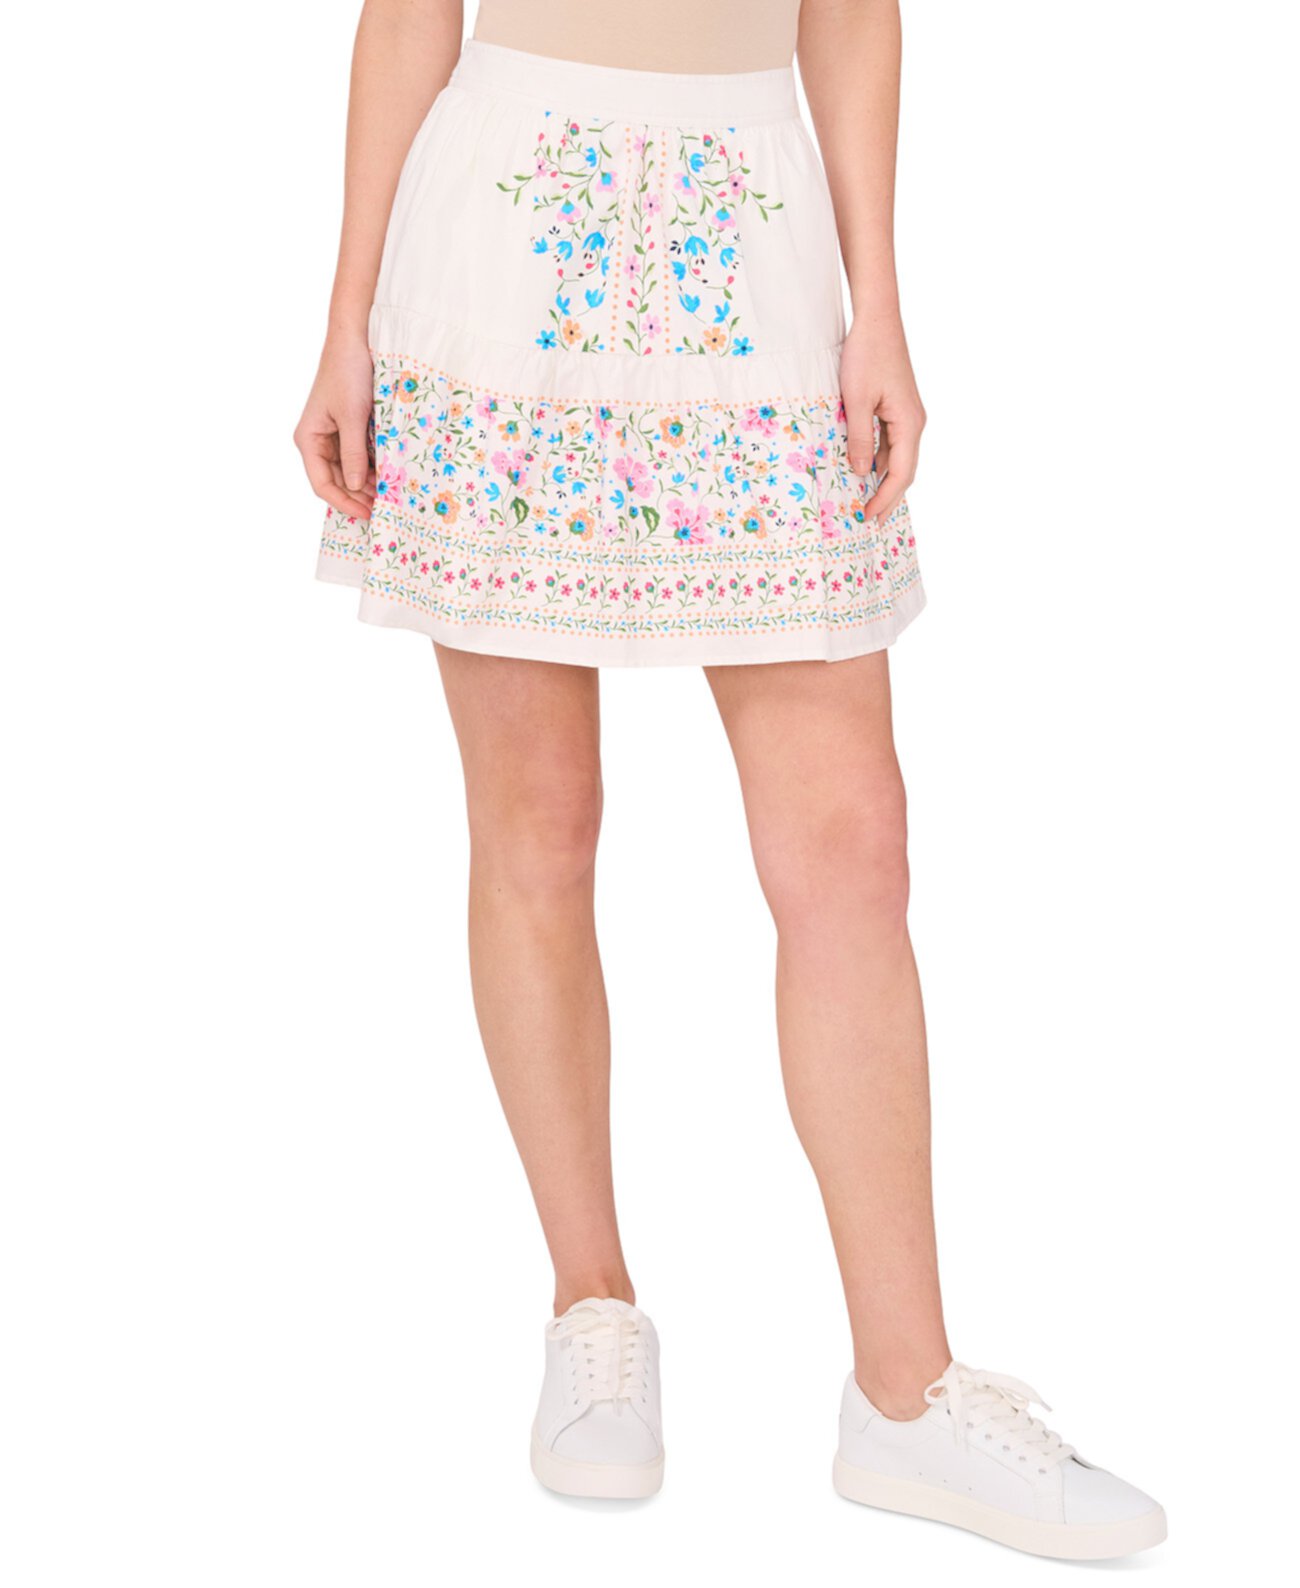 Women's A-Line Placed Print Ruffle Skirt CeCe